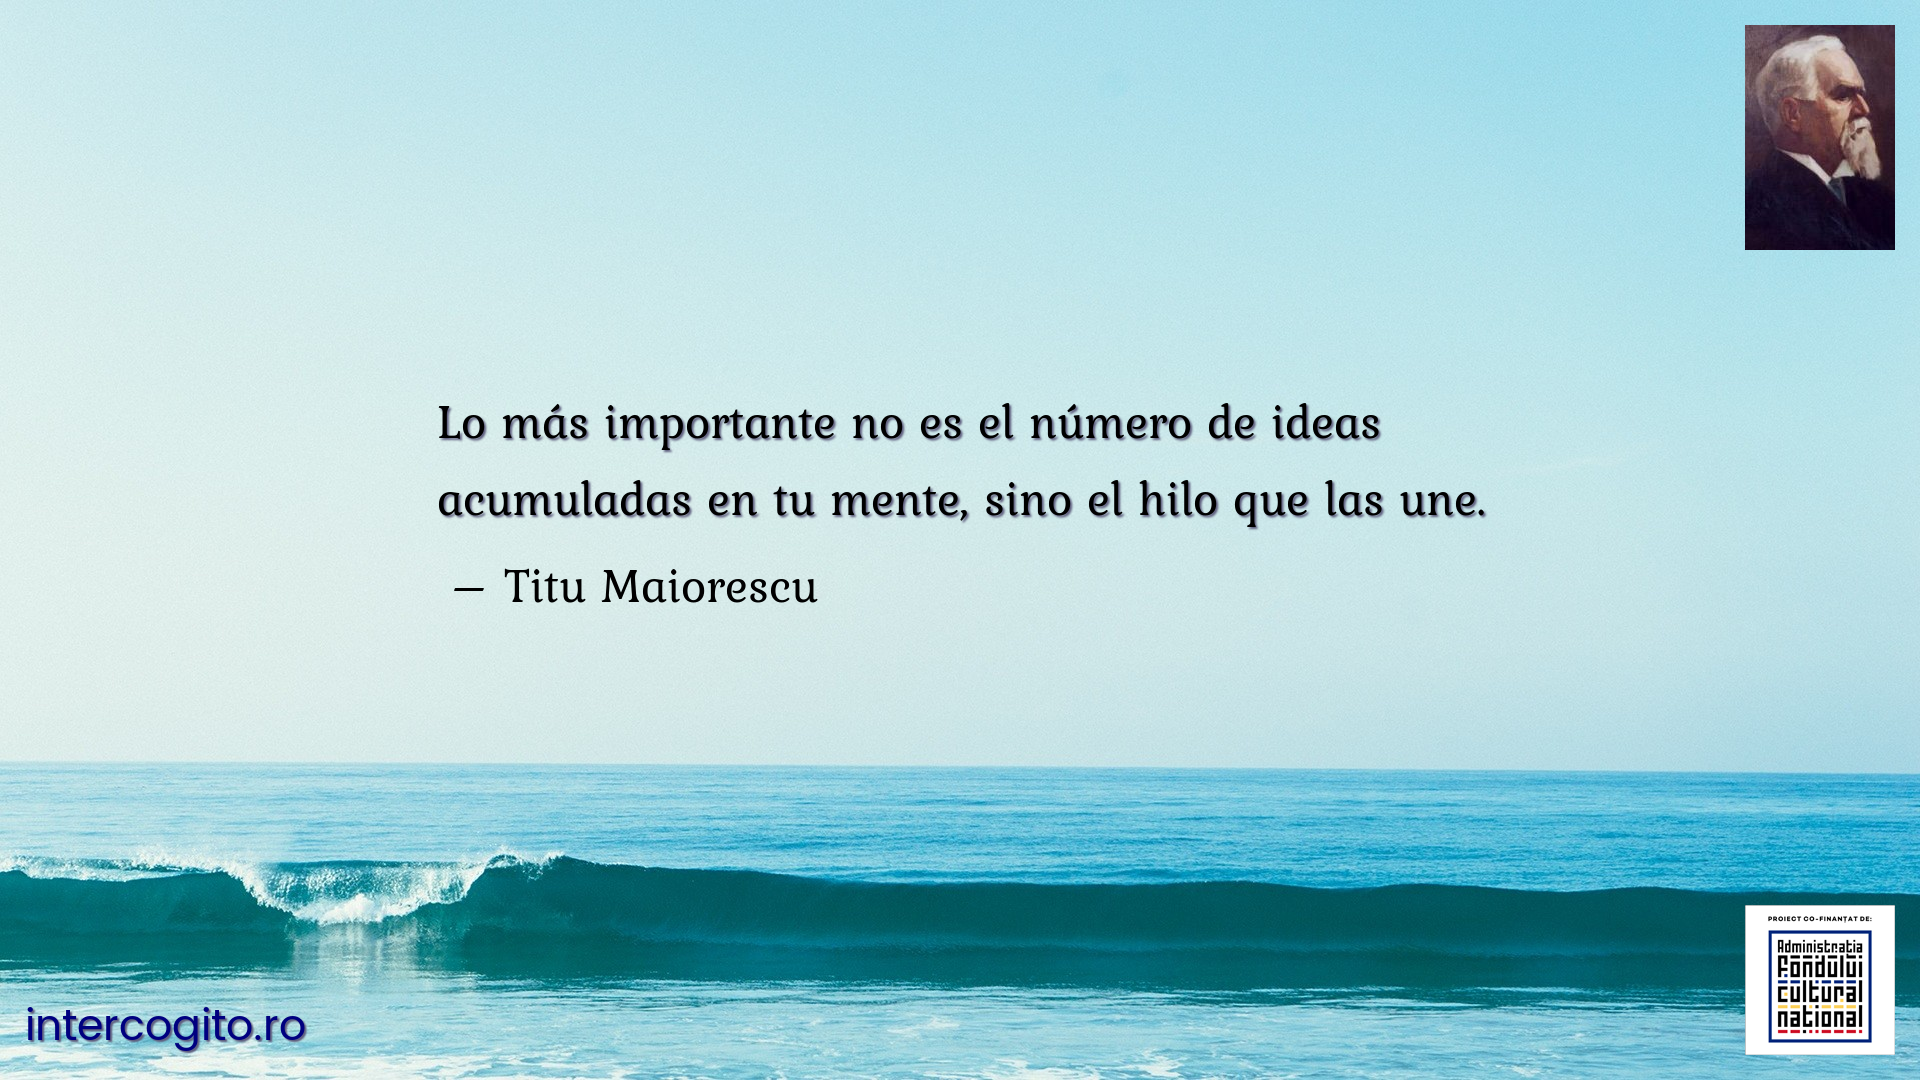 Lo más importante no es el número de ideas acumuladas en tu mente, sino el hilo que las une.